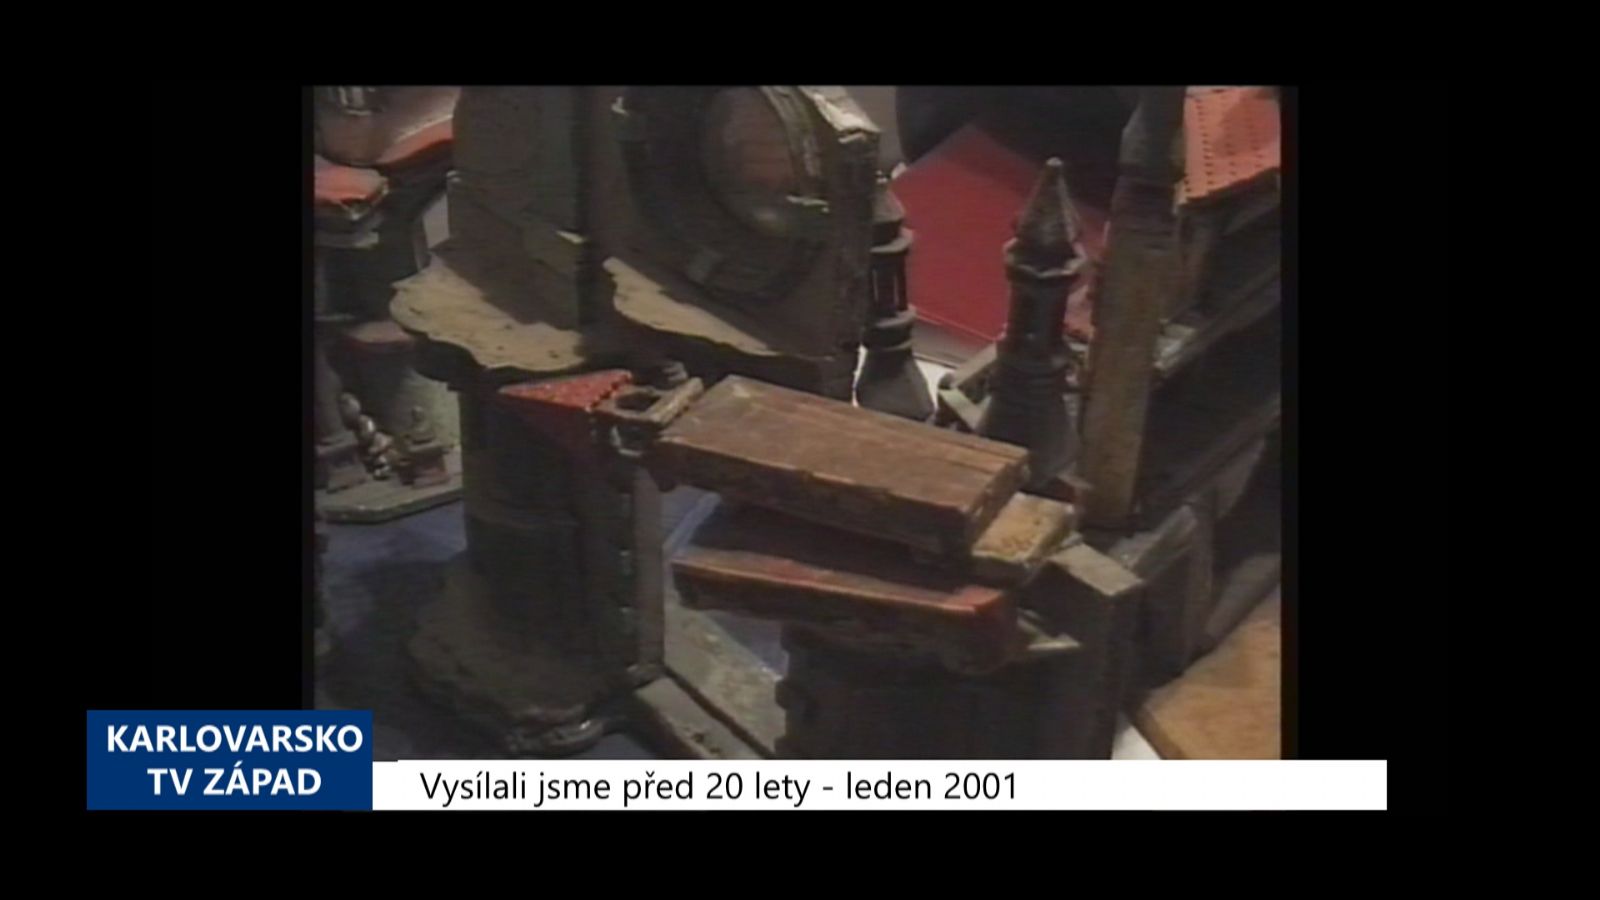 2001 – Kynšperk: Veřejná sbírka na záchranu betléma (TV Západ)